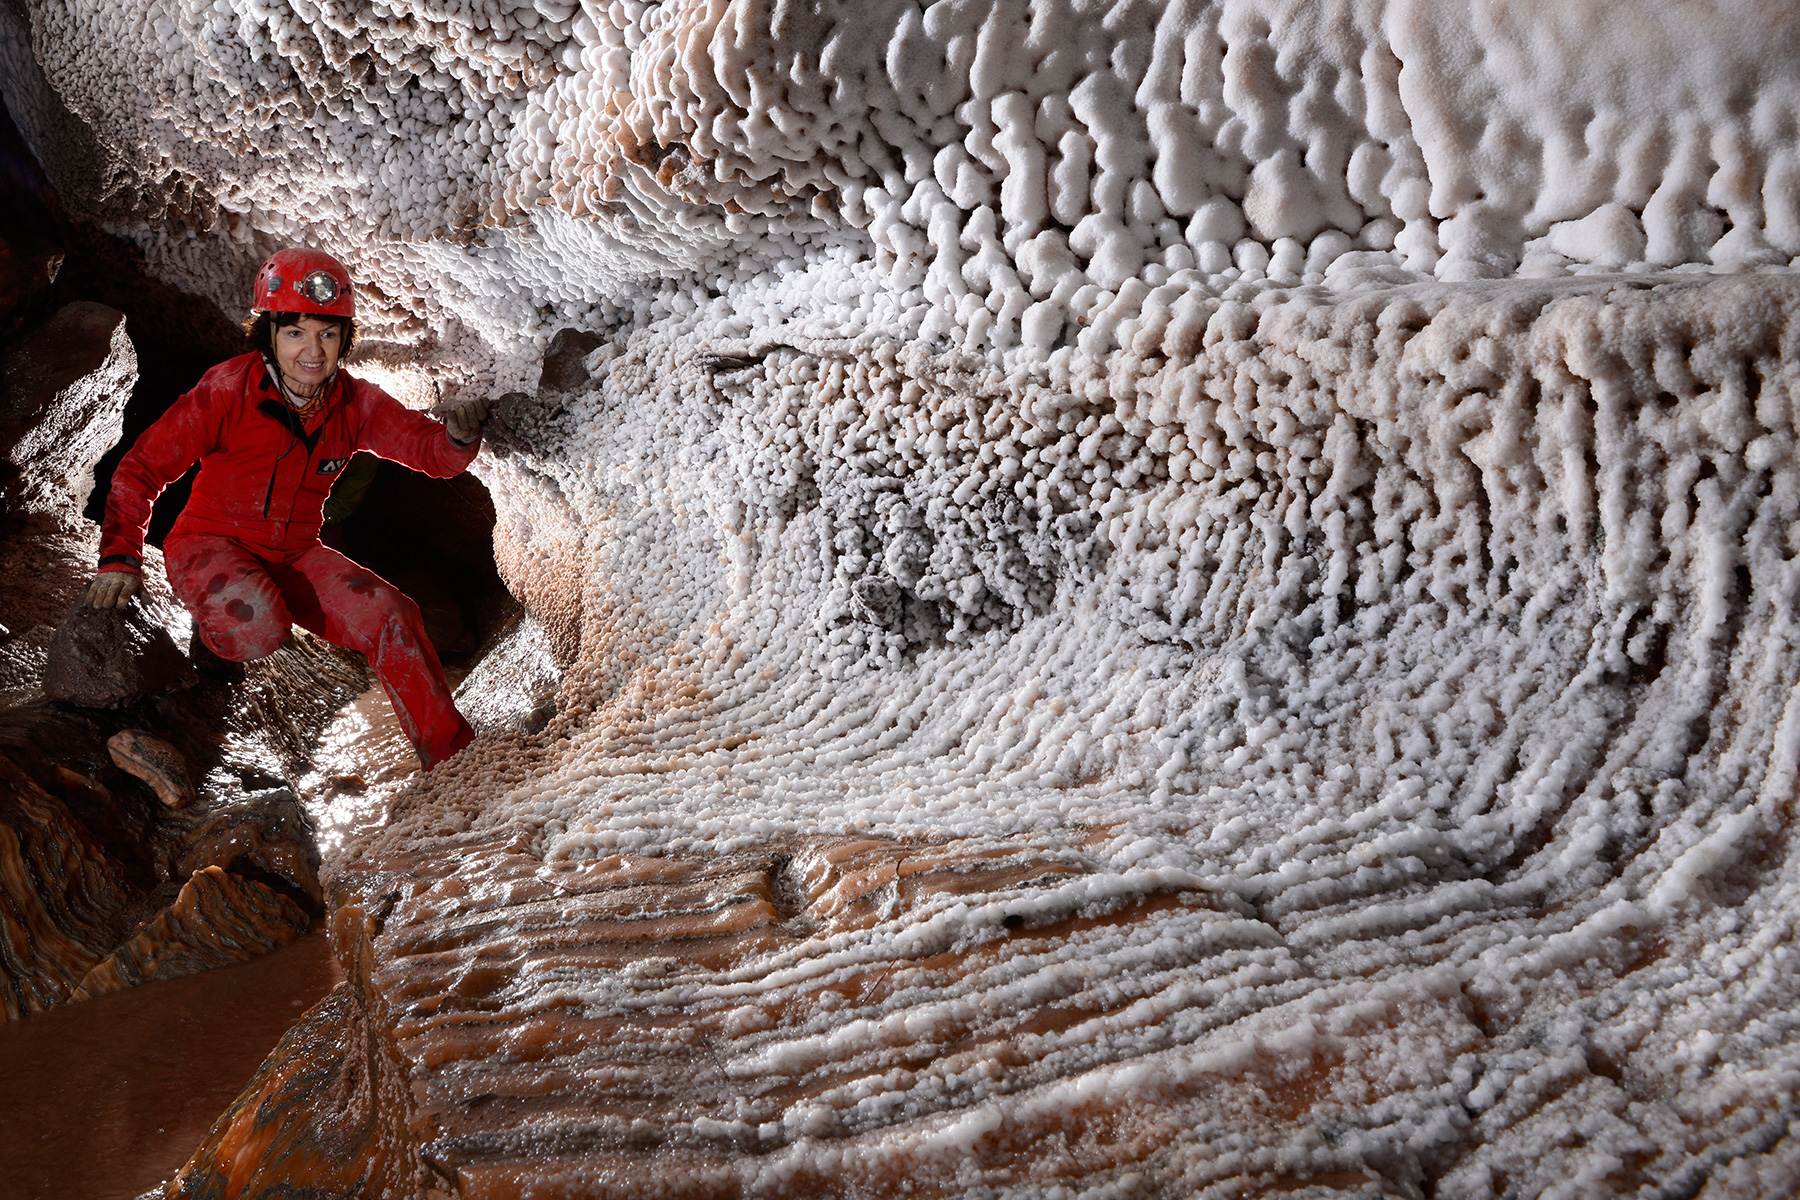 Cueva de sal (Espagne) : petite galerie dont les parois sont tapissées de dépôts blancs de sel 